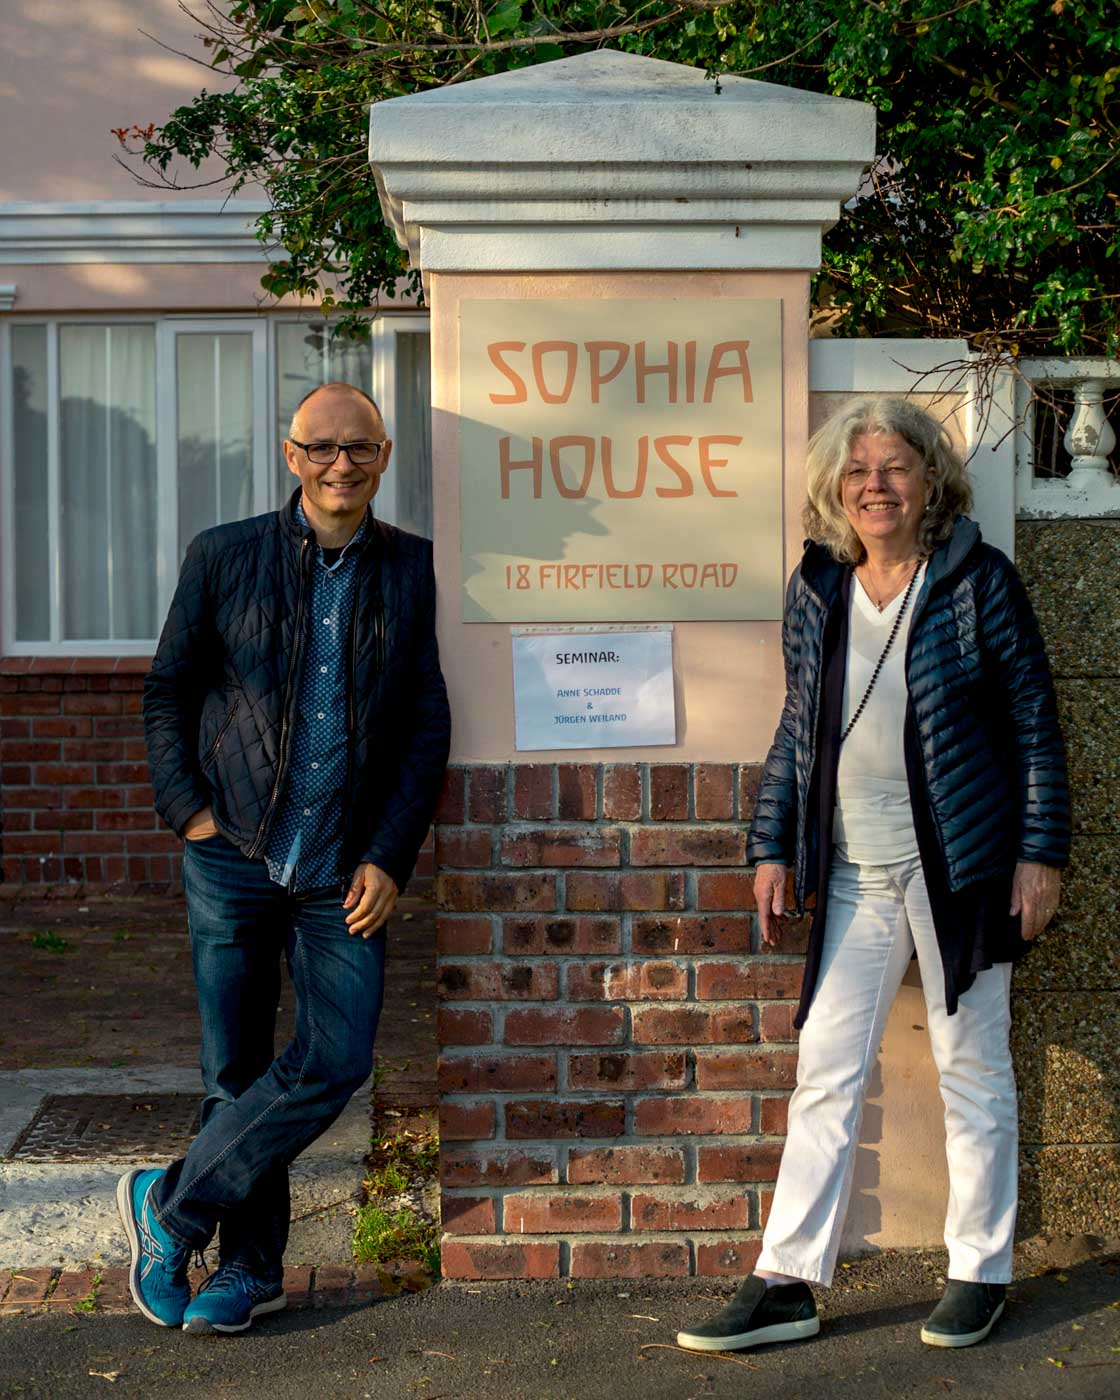 Anne und Jürgen vor dem Sophia House in Plumstead